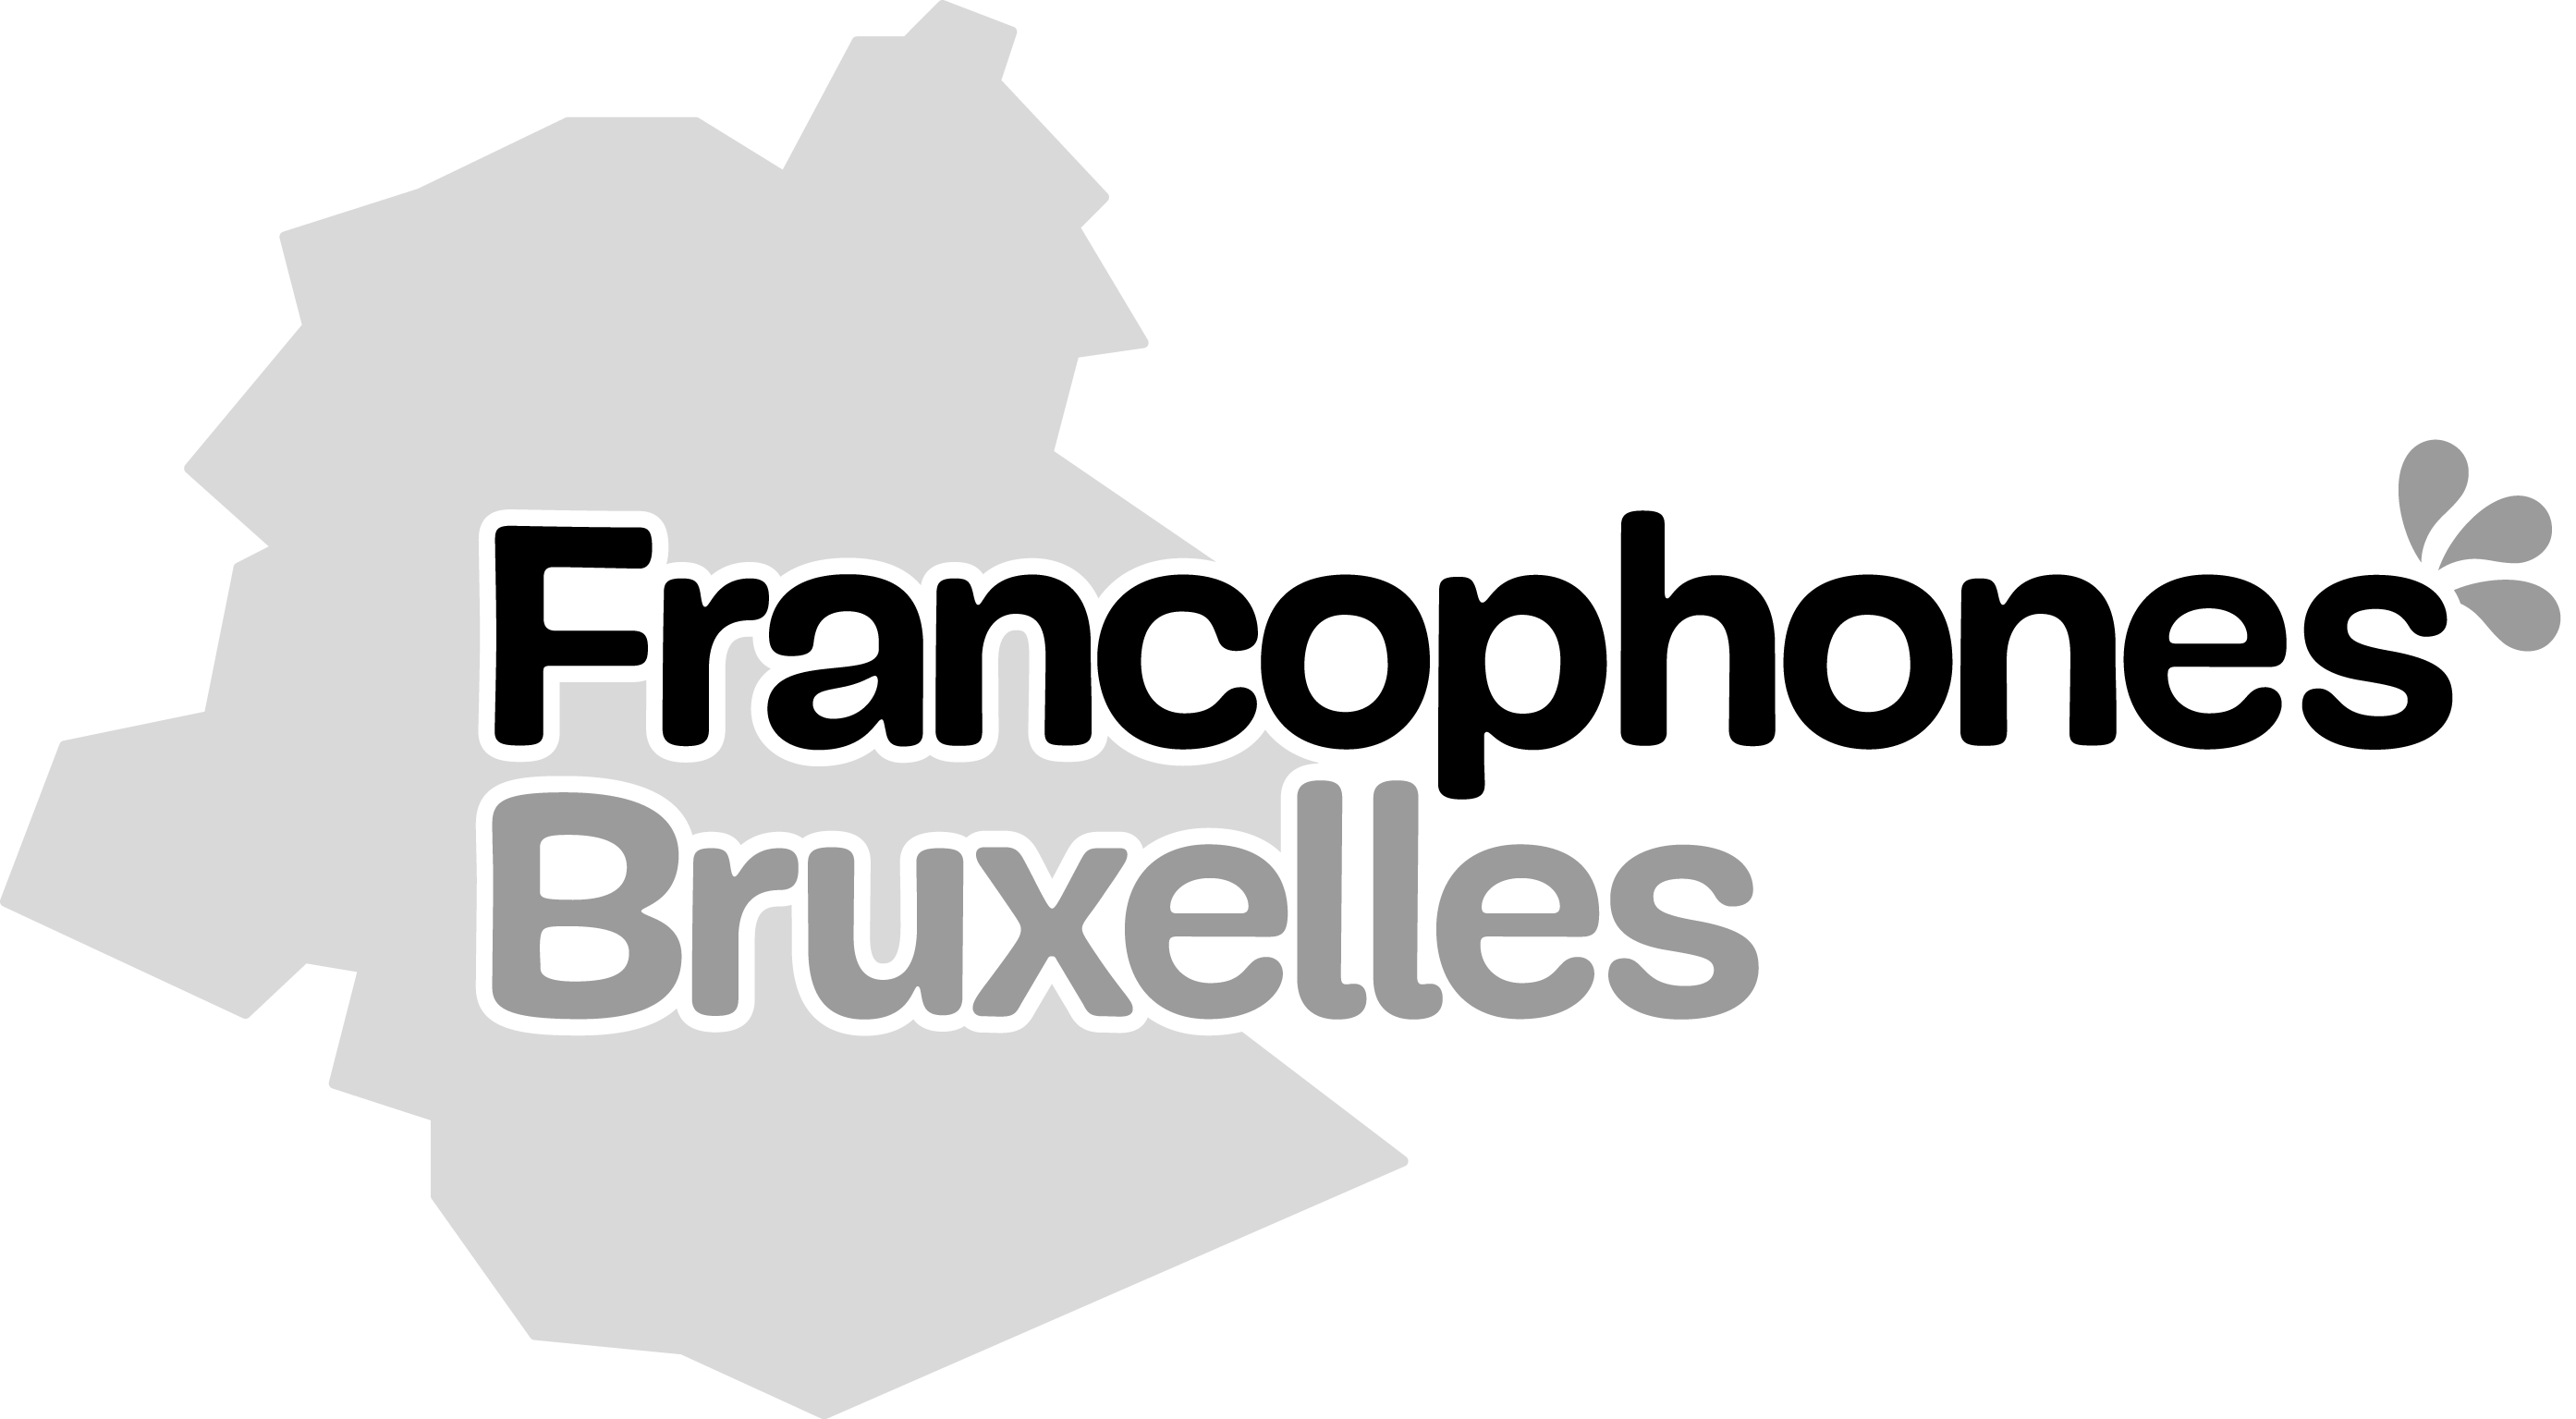 https://env9wfz7ij4.exactdn.com/wp-content/uploads/sites/3/2019/08/Logo-Francophones-Bruxelles.png?strip=all&lossy=1&ssl=1